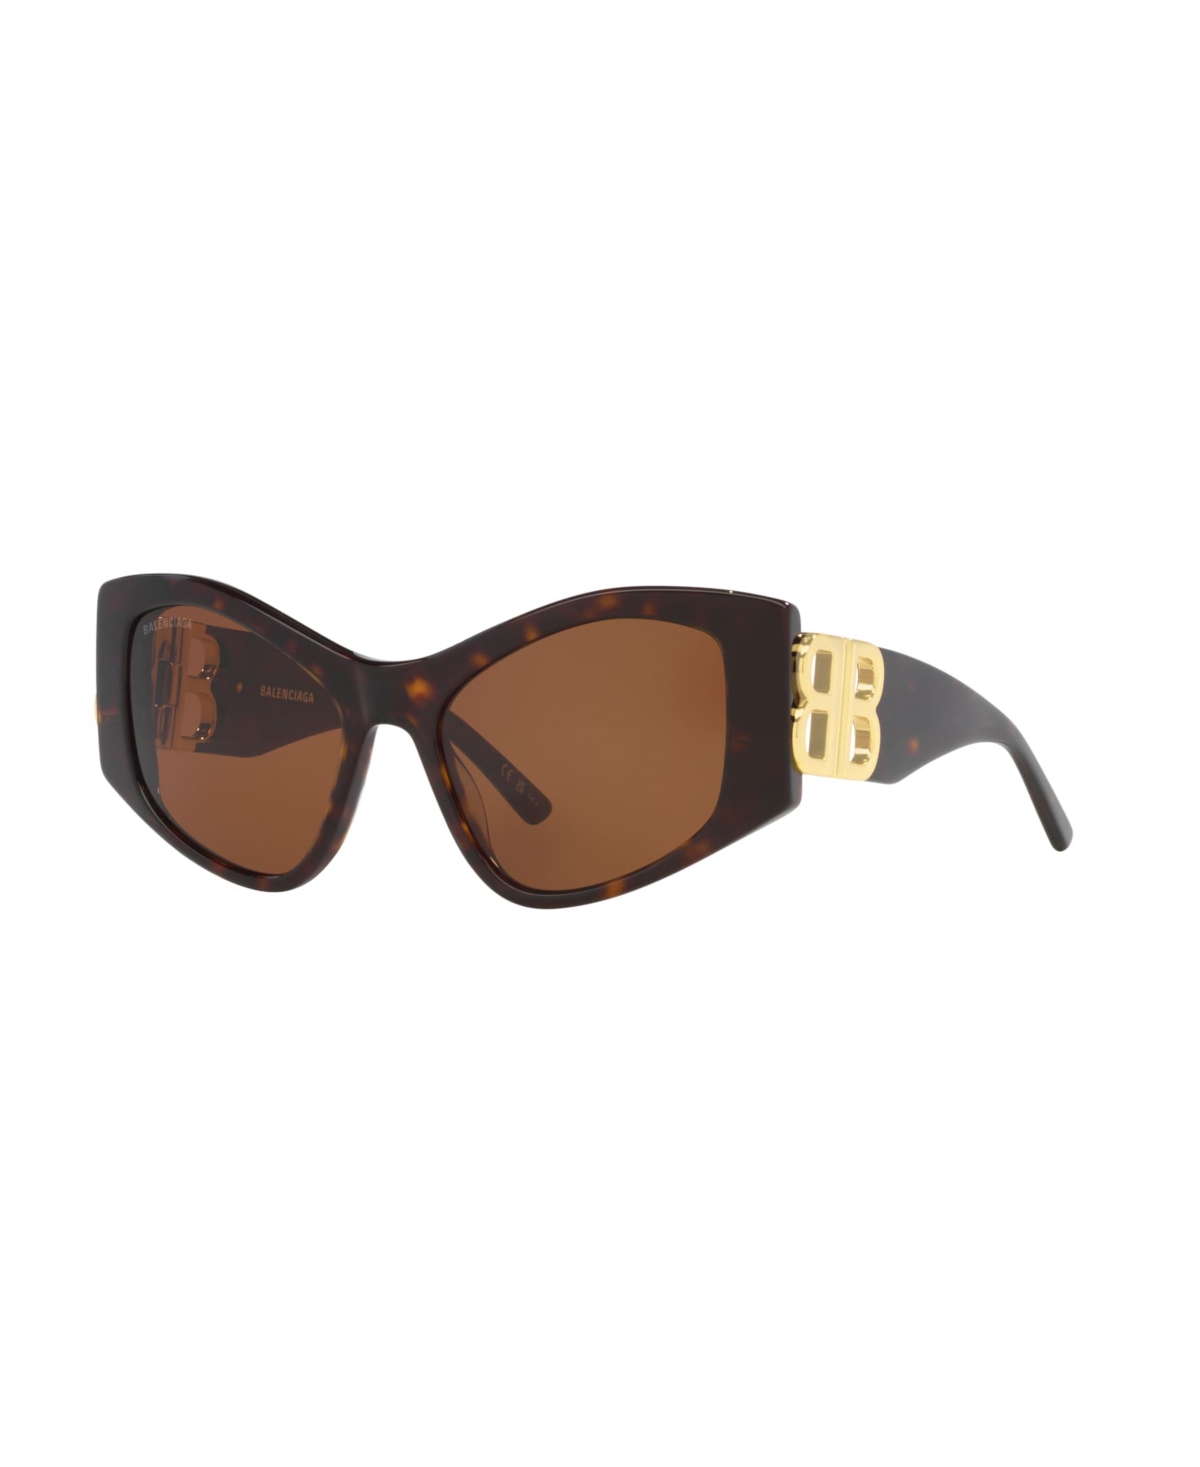 Women's Sunglasses, Bb0287S 6E000311 - Tortoise